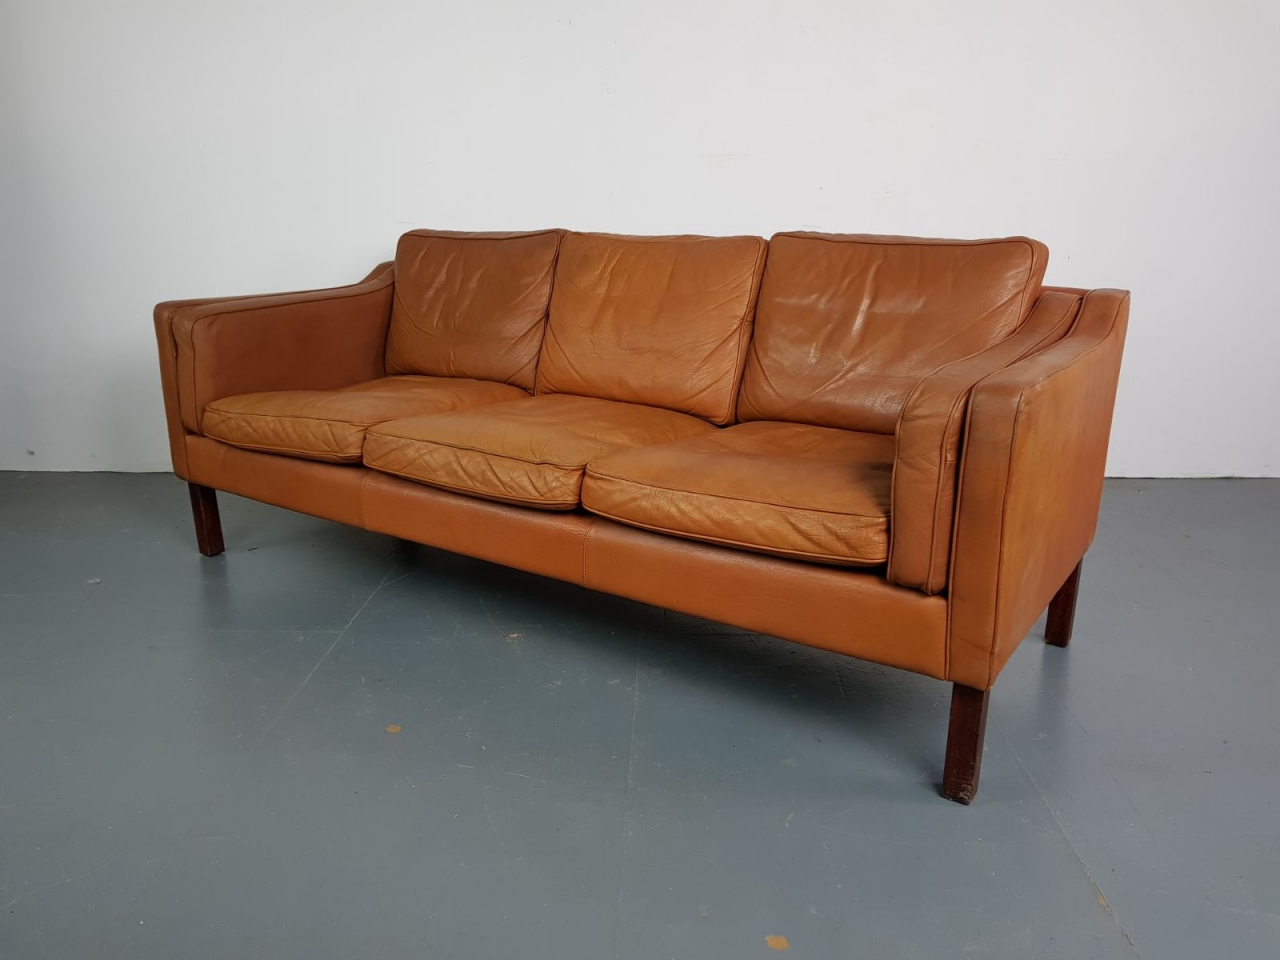 camel tan leather sofa